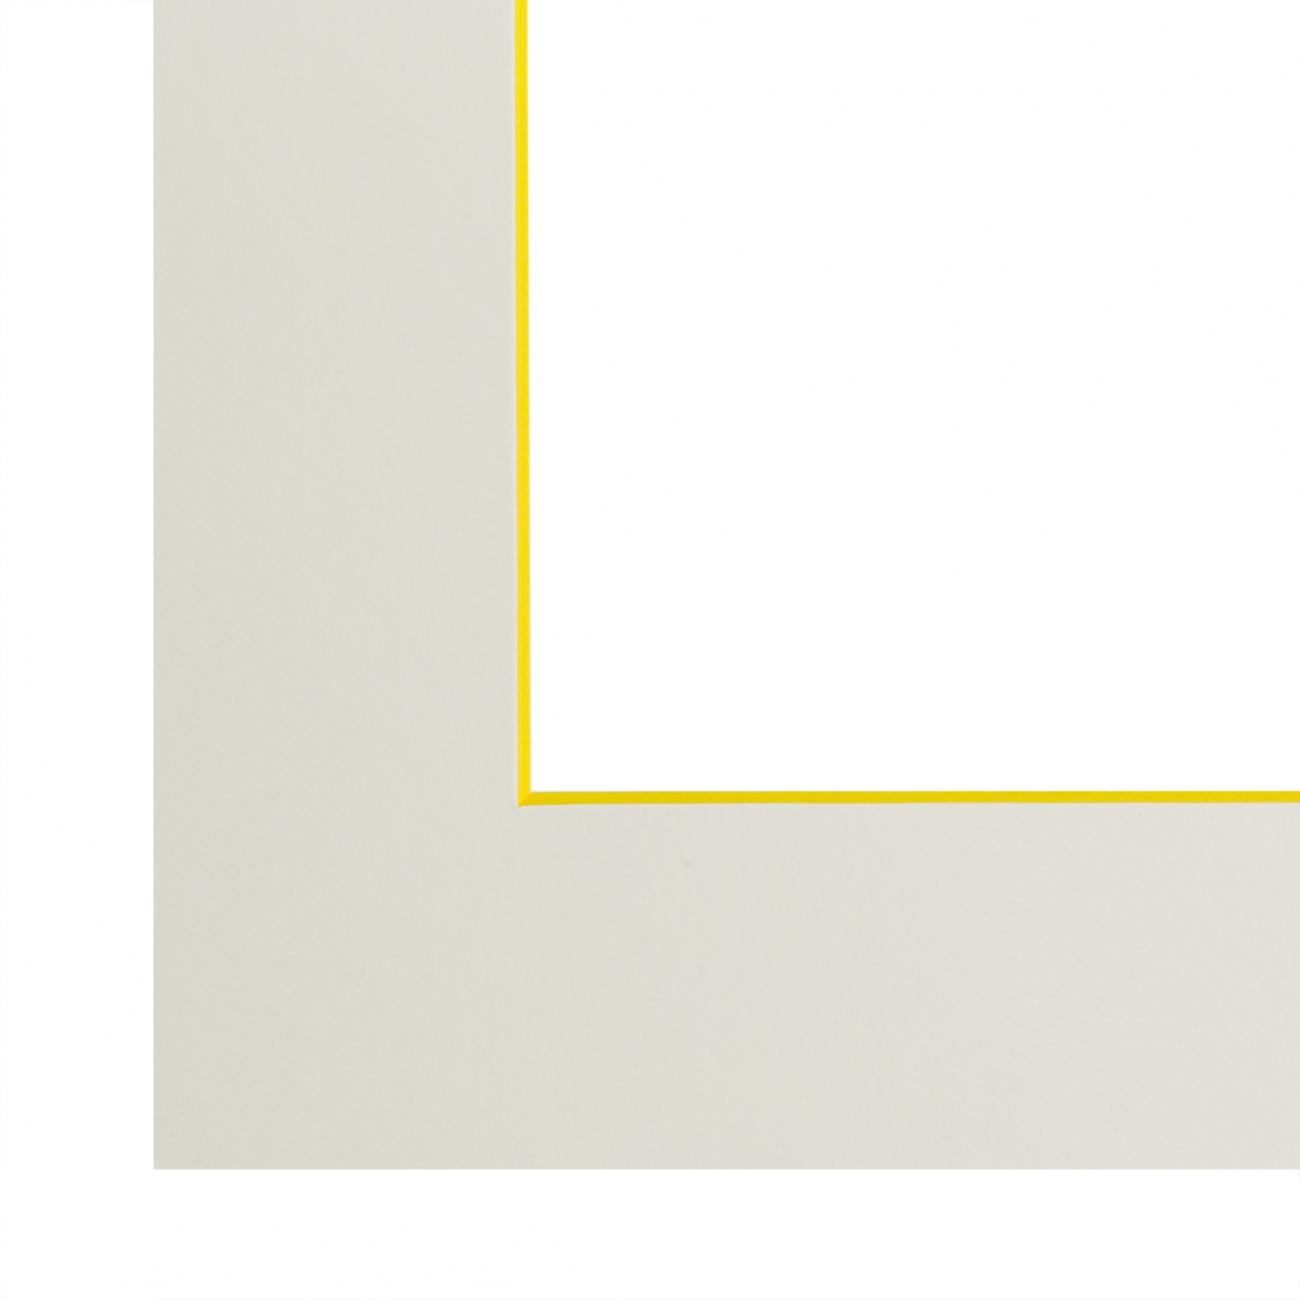 Passe passe-partout blanc naturel, âme de couleur pigmentée (jaune tonique), qualité conservation (1,7mm d'épaisseur) - 30x30